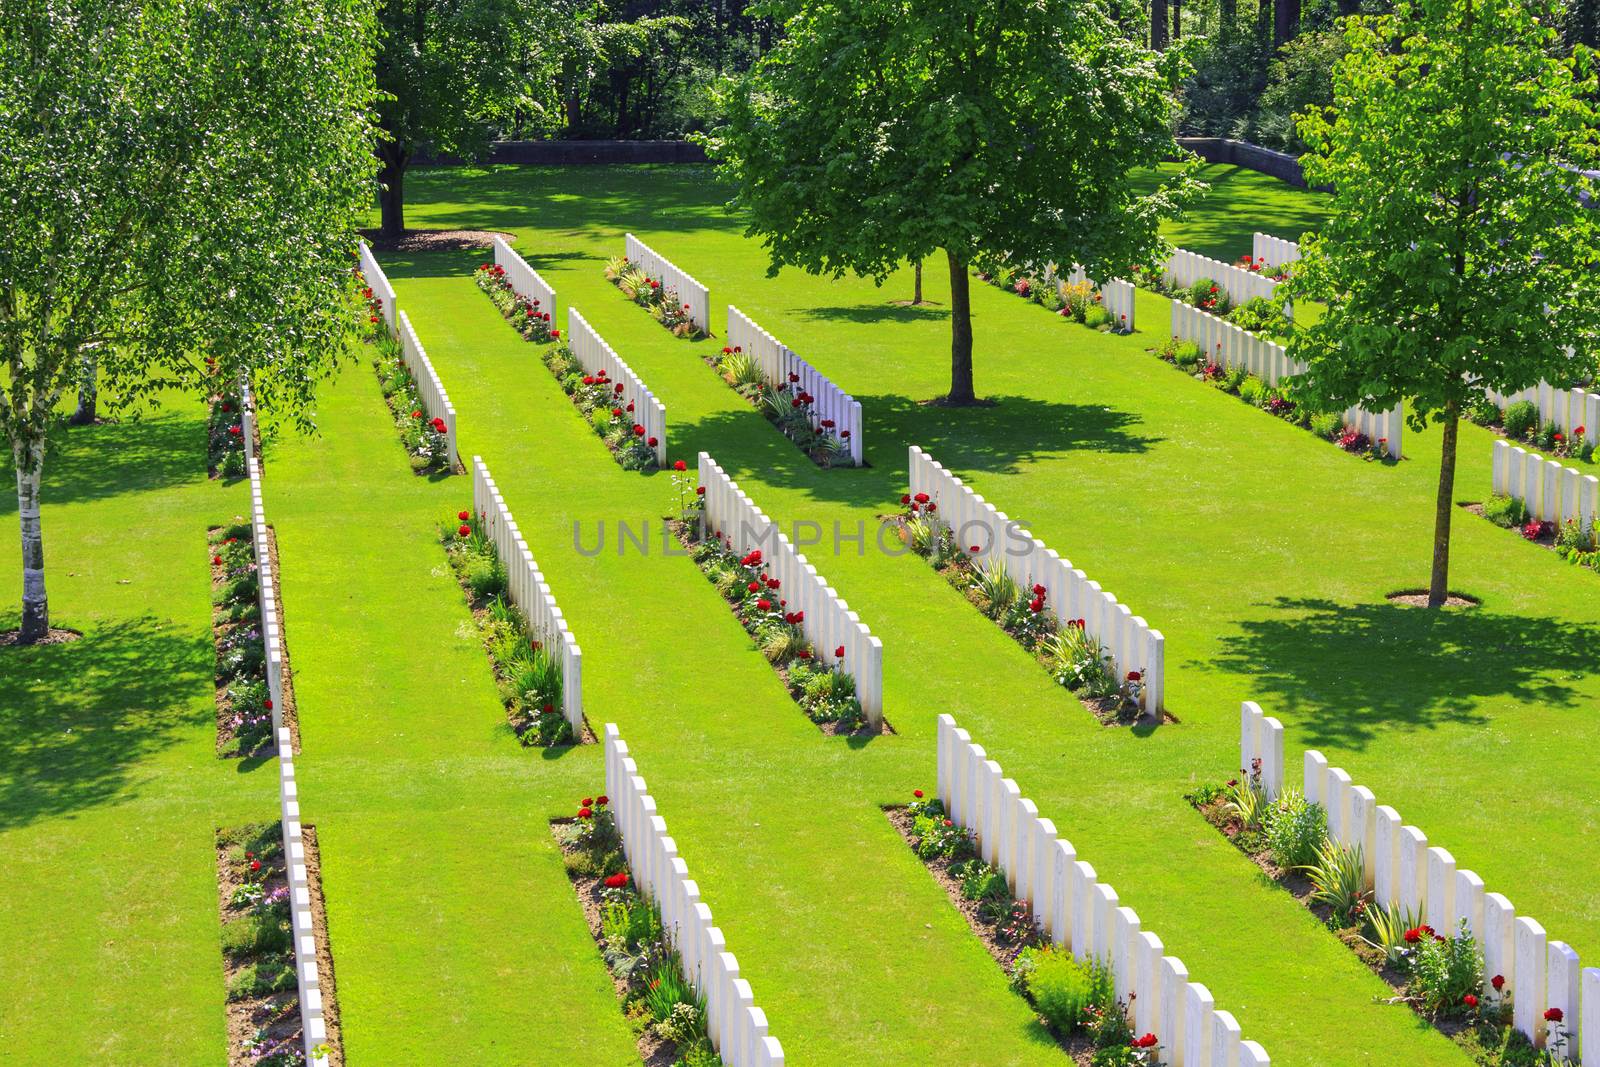 New British Cemetery world war 1 flanders fields